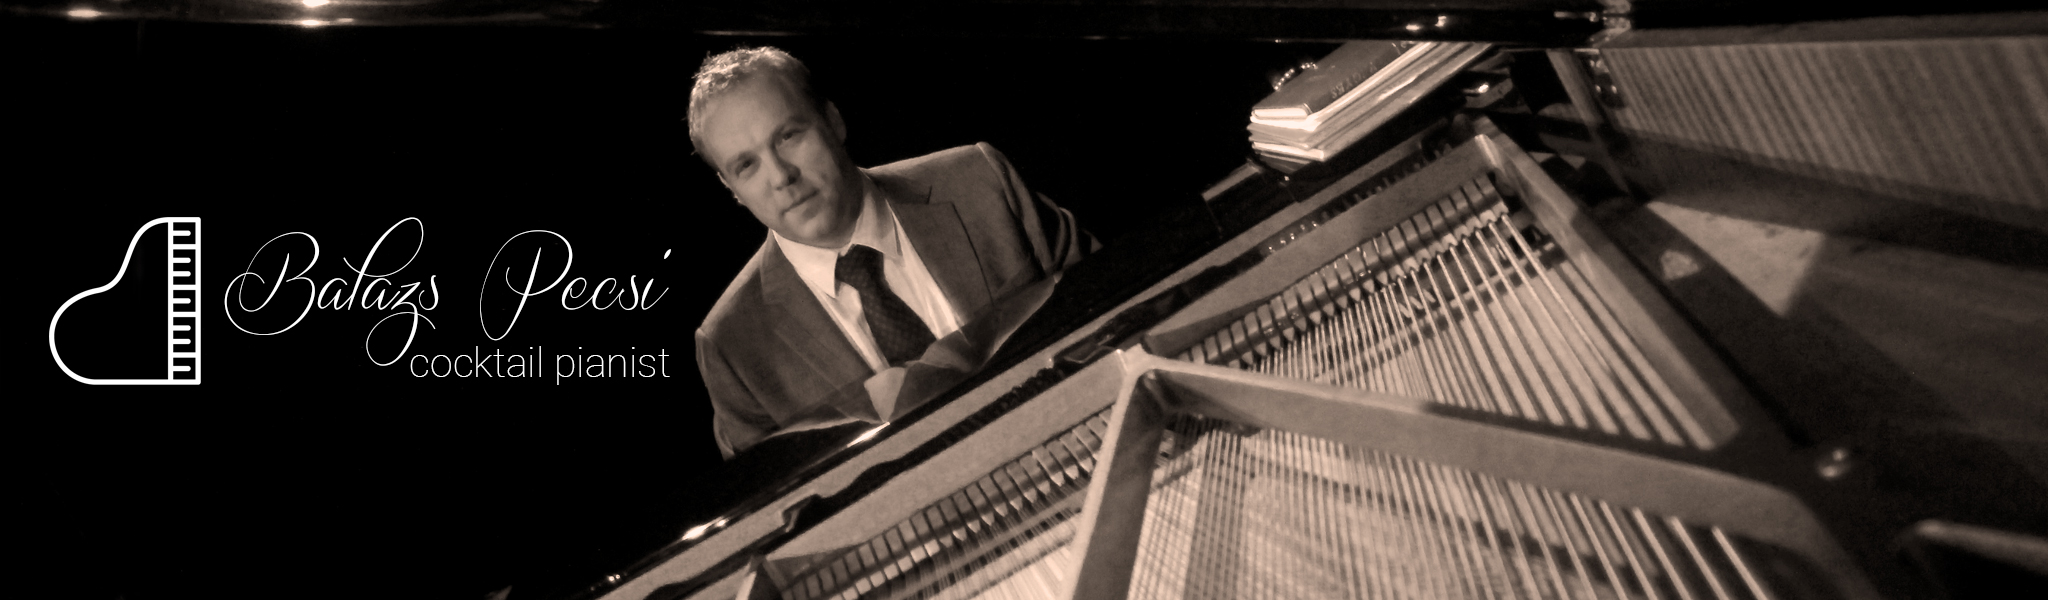 Balázs Pécsi cocktail pianist